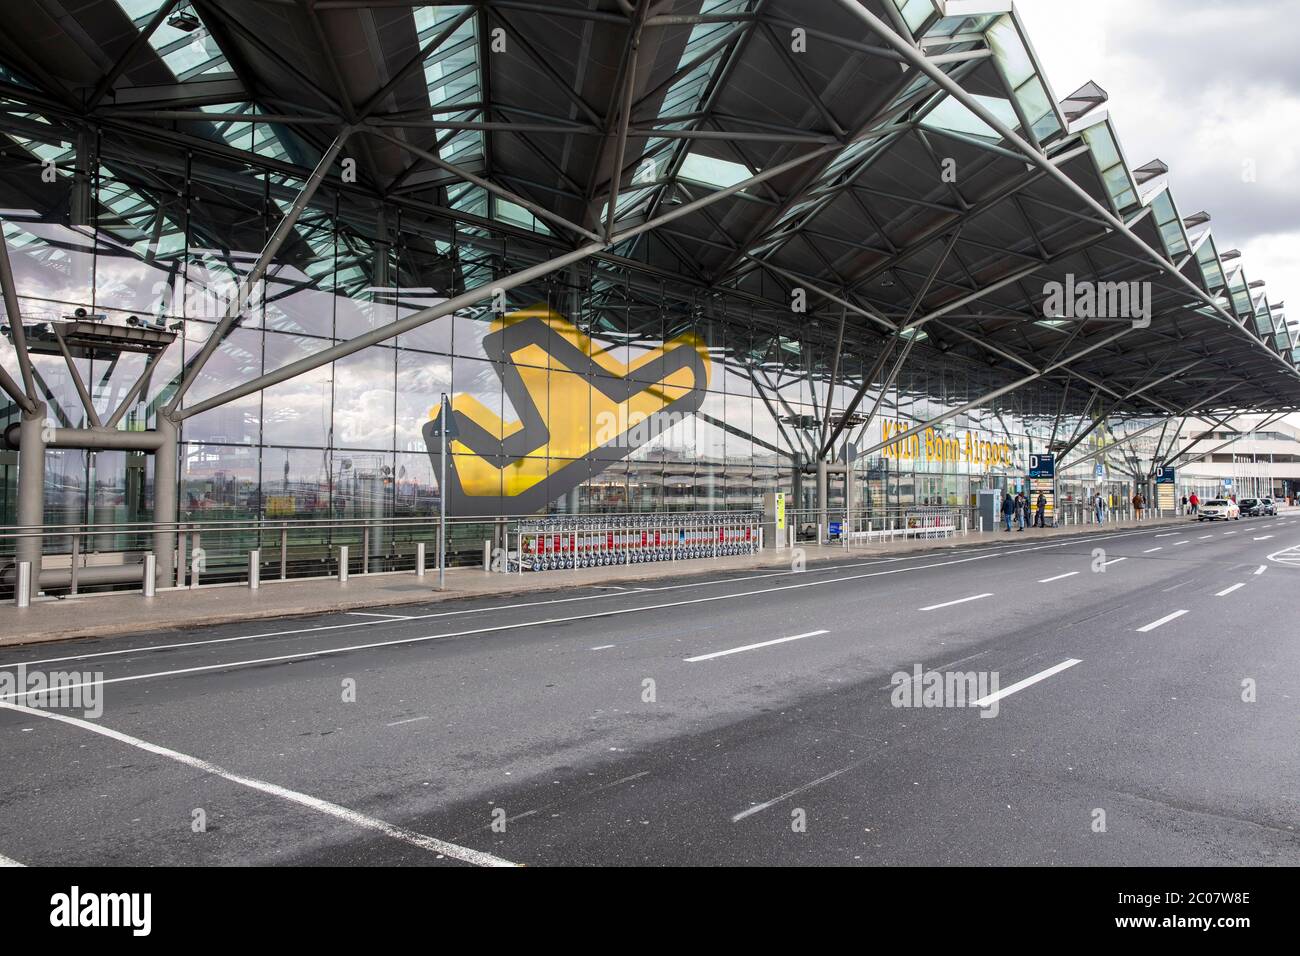 Auswirkung am Flughafen Köln/Bonn Passagierrückgang im Zusammenhang mit der weltweiten Ausbreitung des Coronavirus. Köln, 14.03.2020 Foto de stock